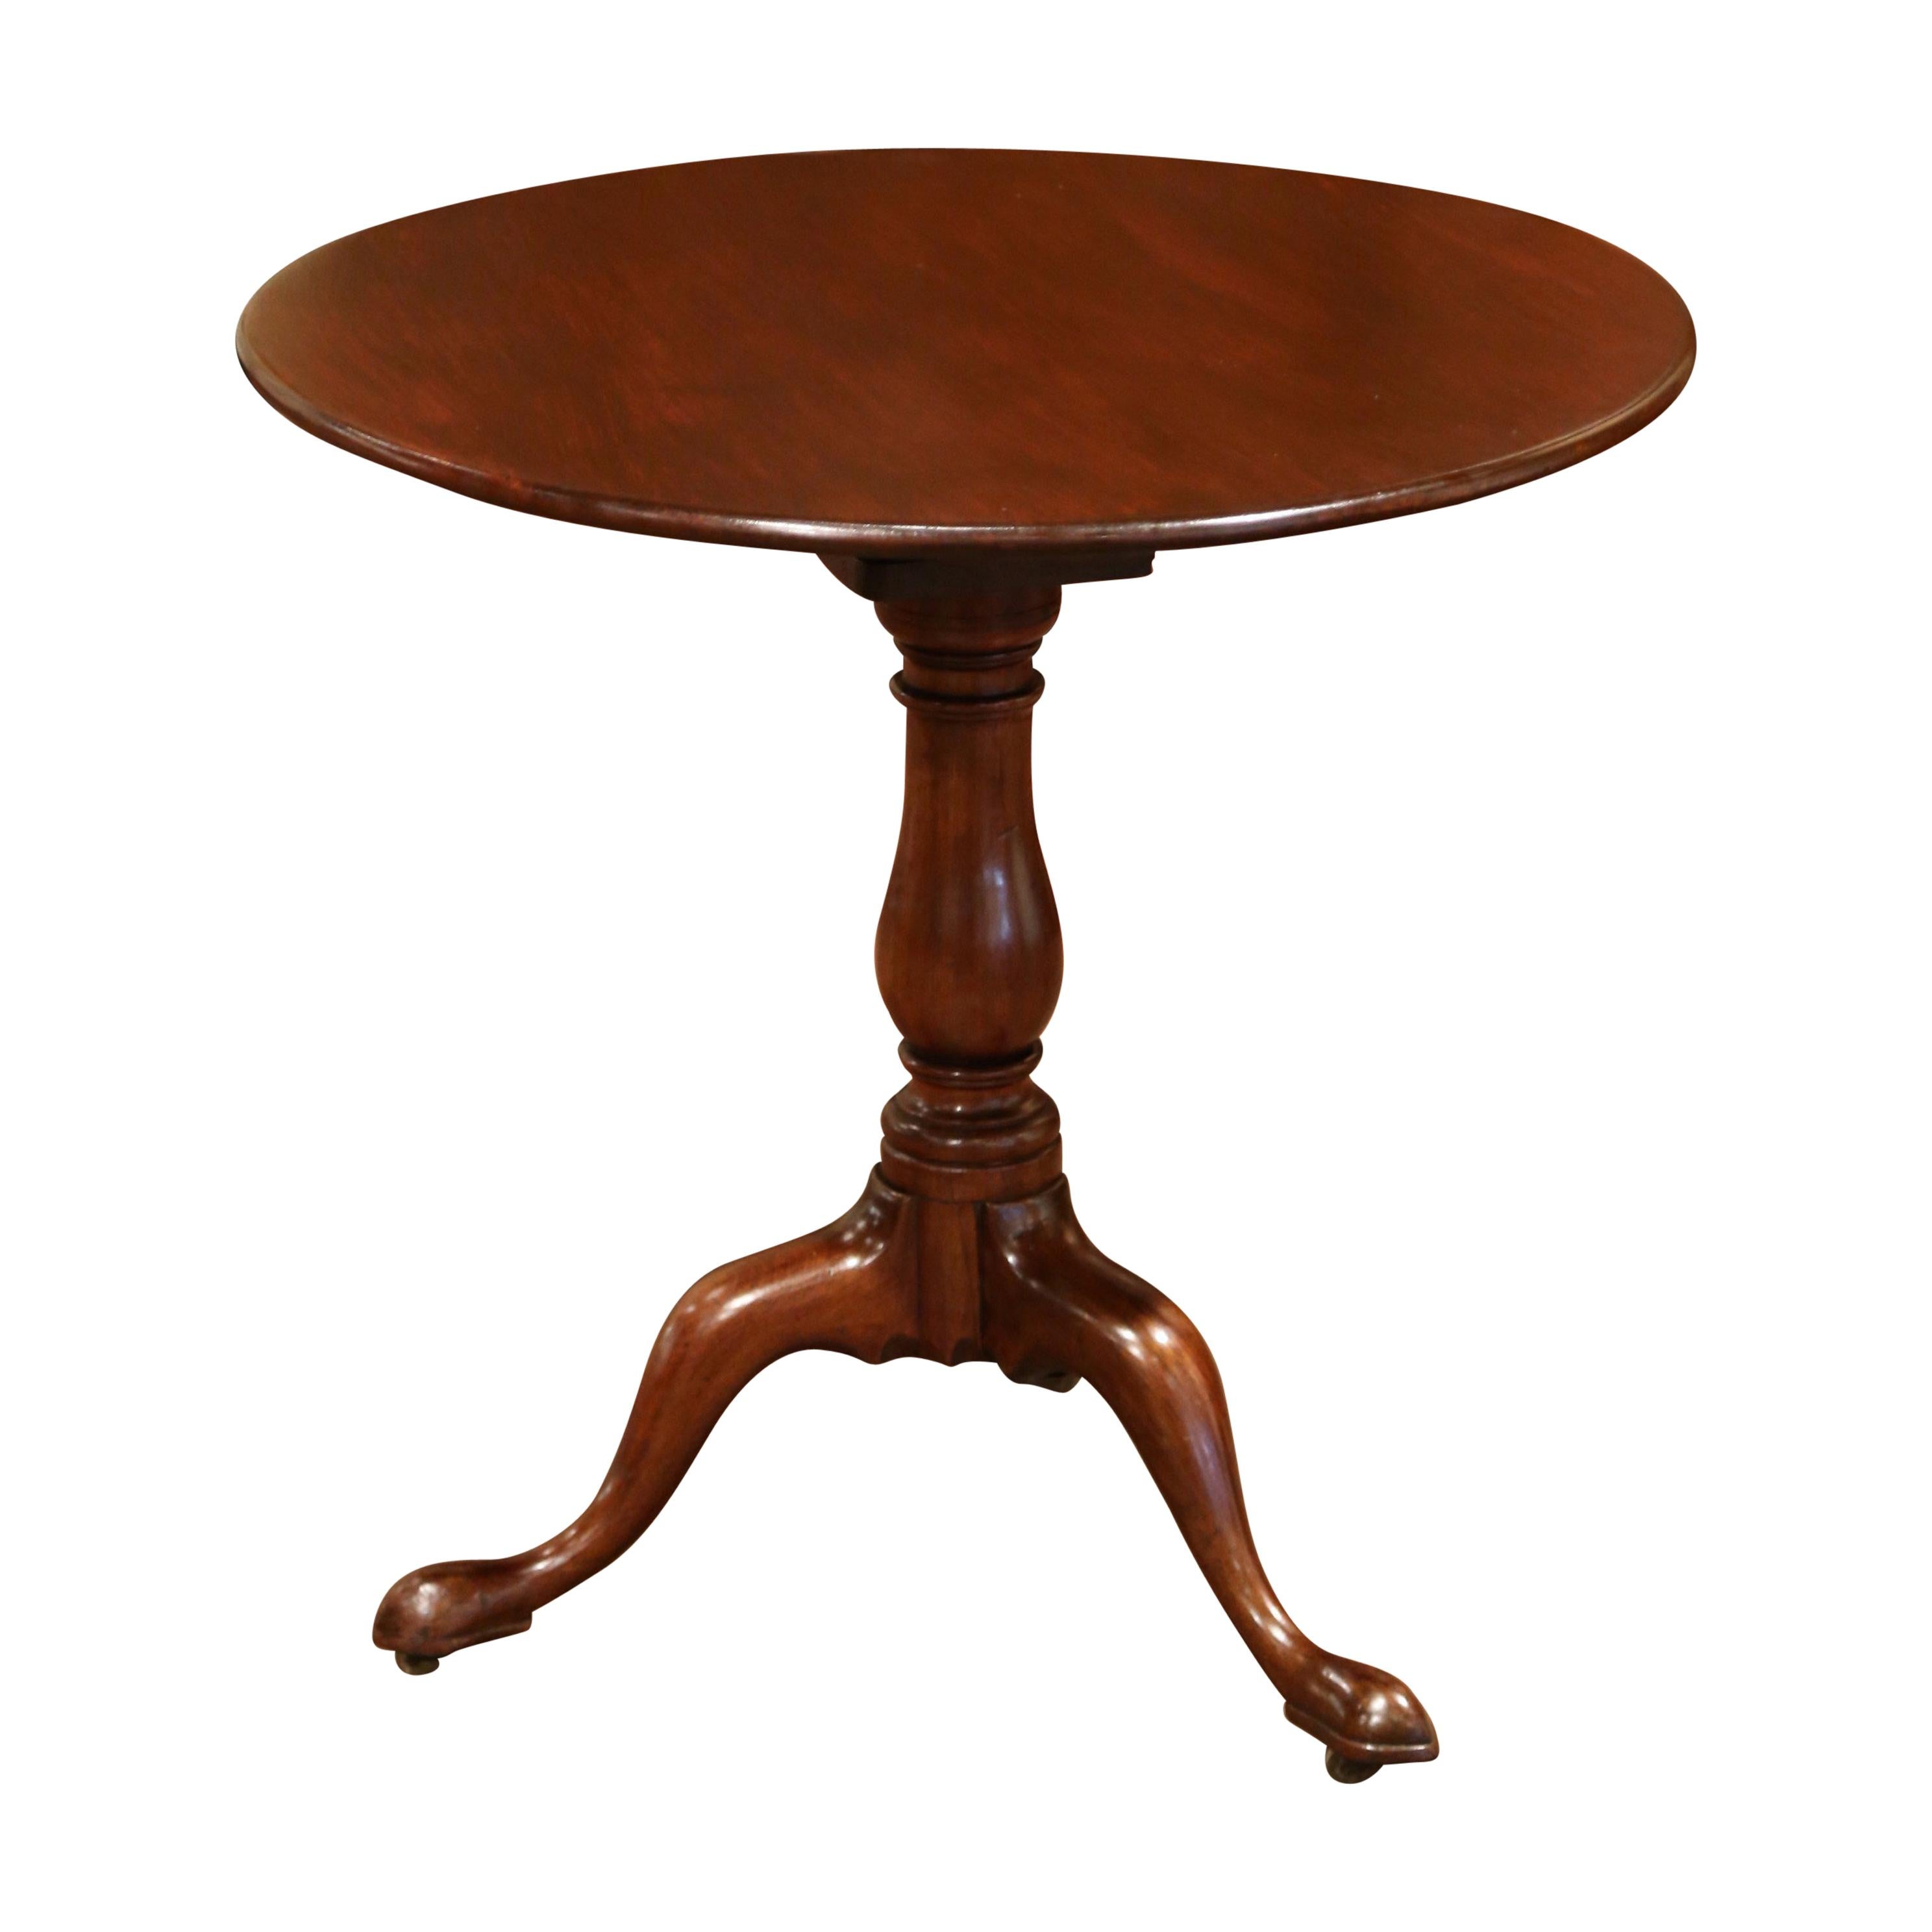 Dieser elegante antike Teetisch wurde um 1860 in England gefertigt. Er besteht aus Mahagoni und steht auf einem dreibeinigen Sockel über einem geschnitzten, gedrechselten Schaft. Der runde Kippmechanismus ist an der Unterseite mit einem